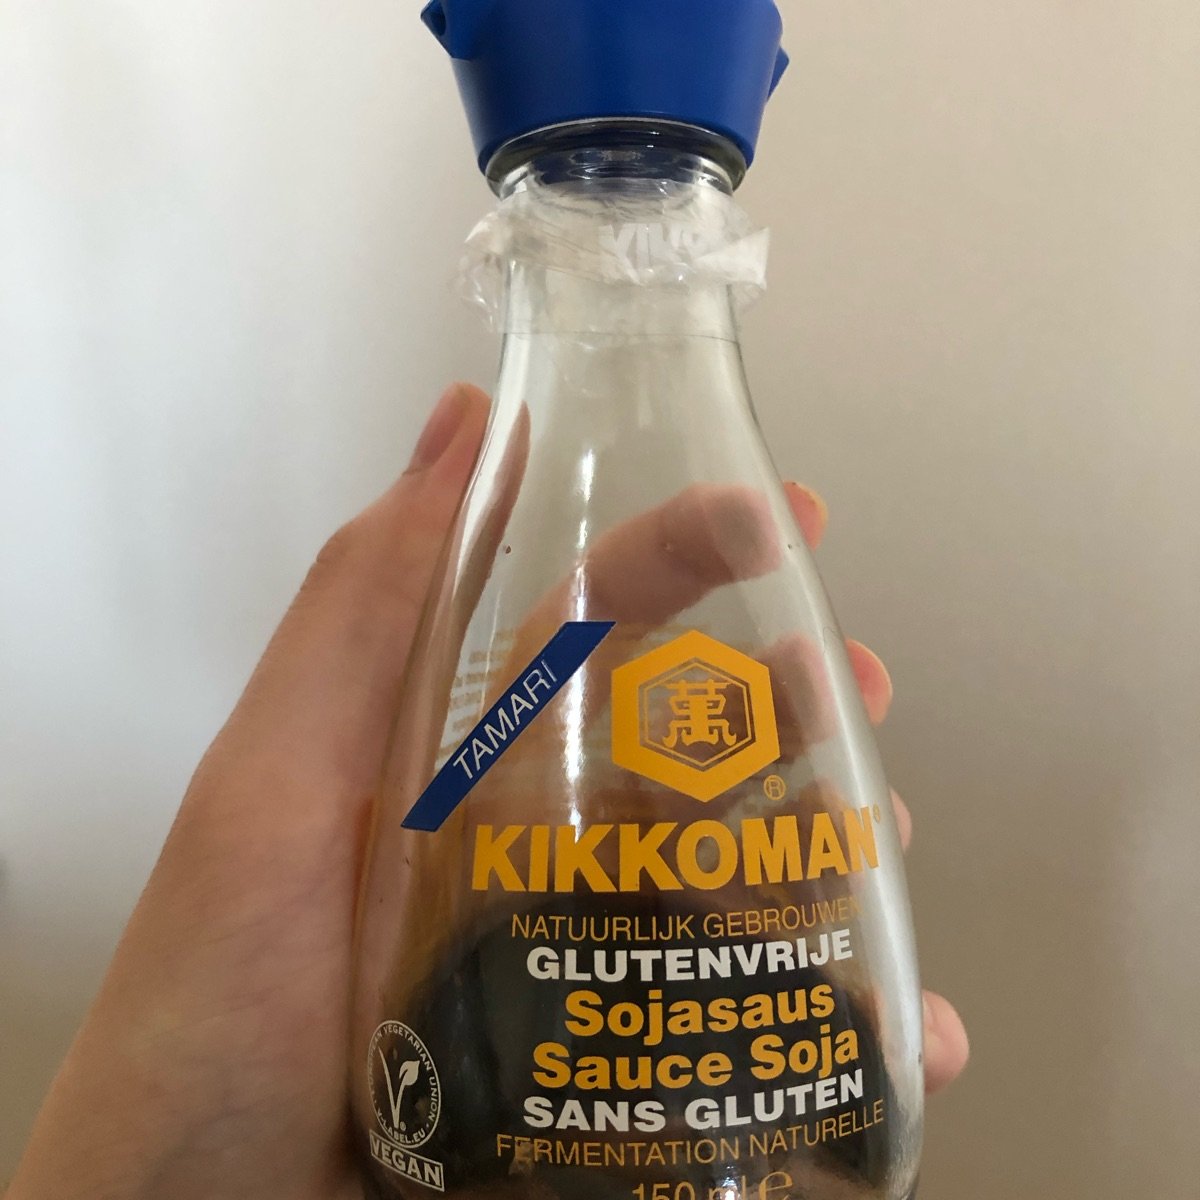 Tamari sauce soja sans gluten fermentation naturelle Kikkoman